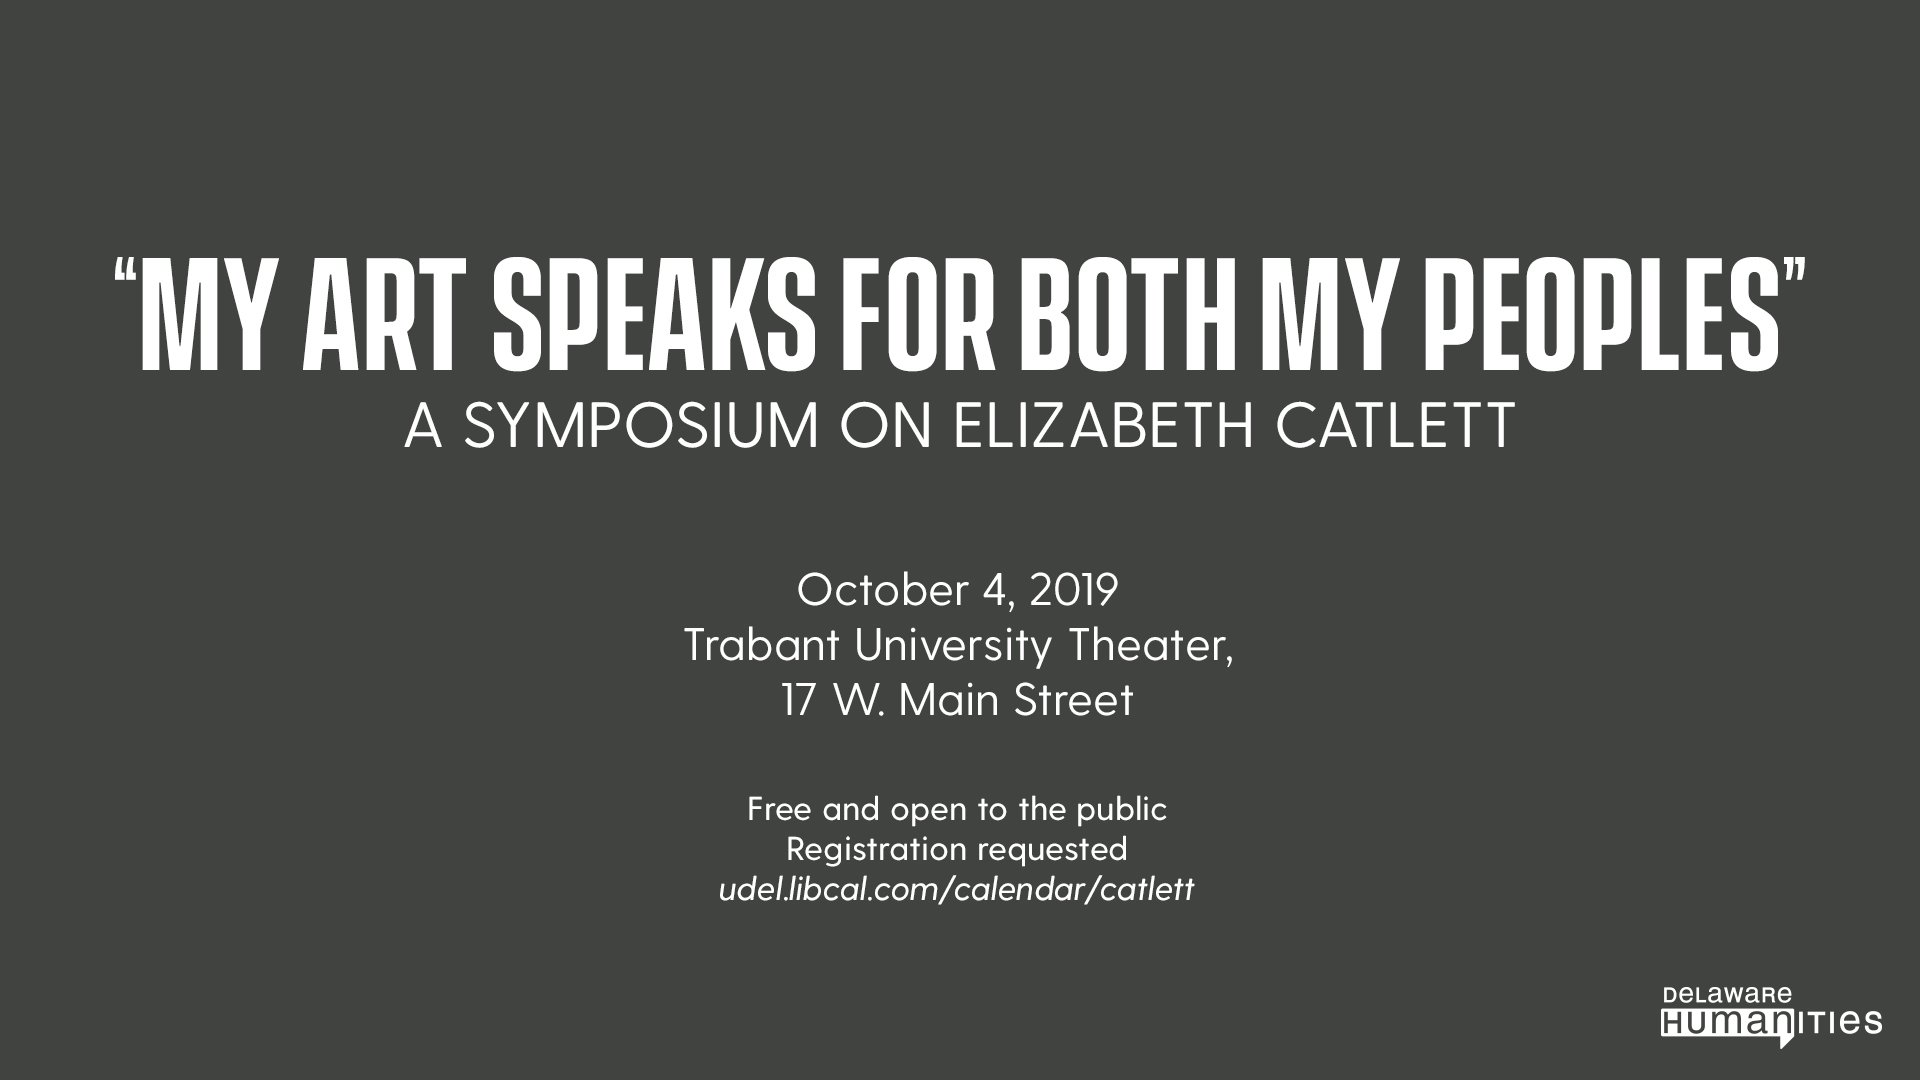 Promotional image for Elizabeth Catlett symposium